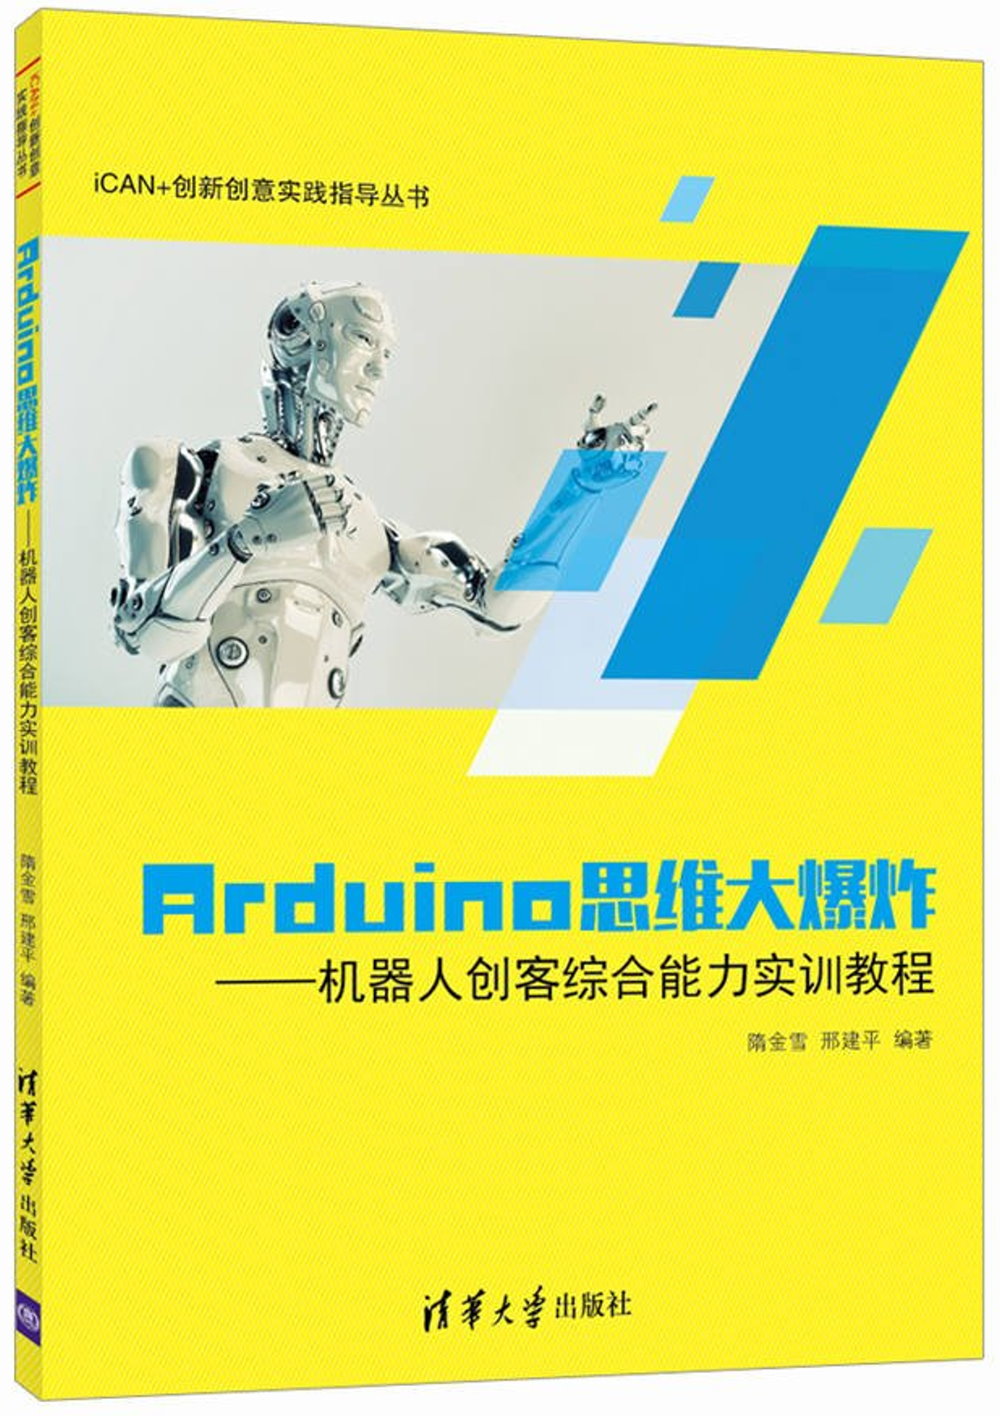 Arduino思維大爆炸--機器人創客綜合能力實訓教程